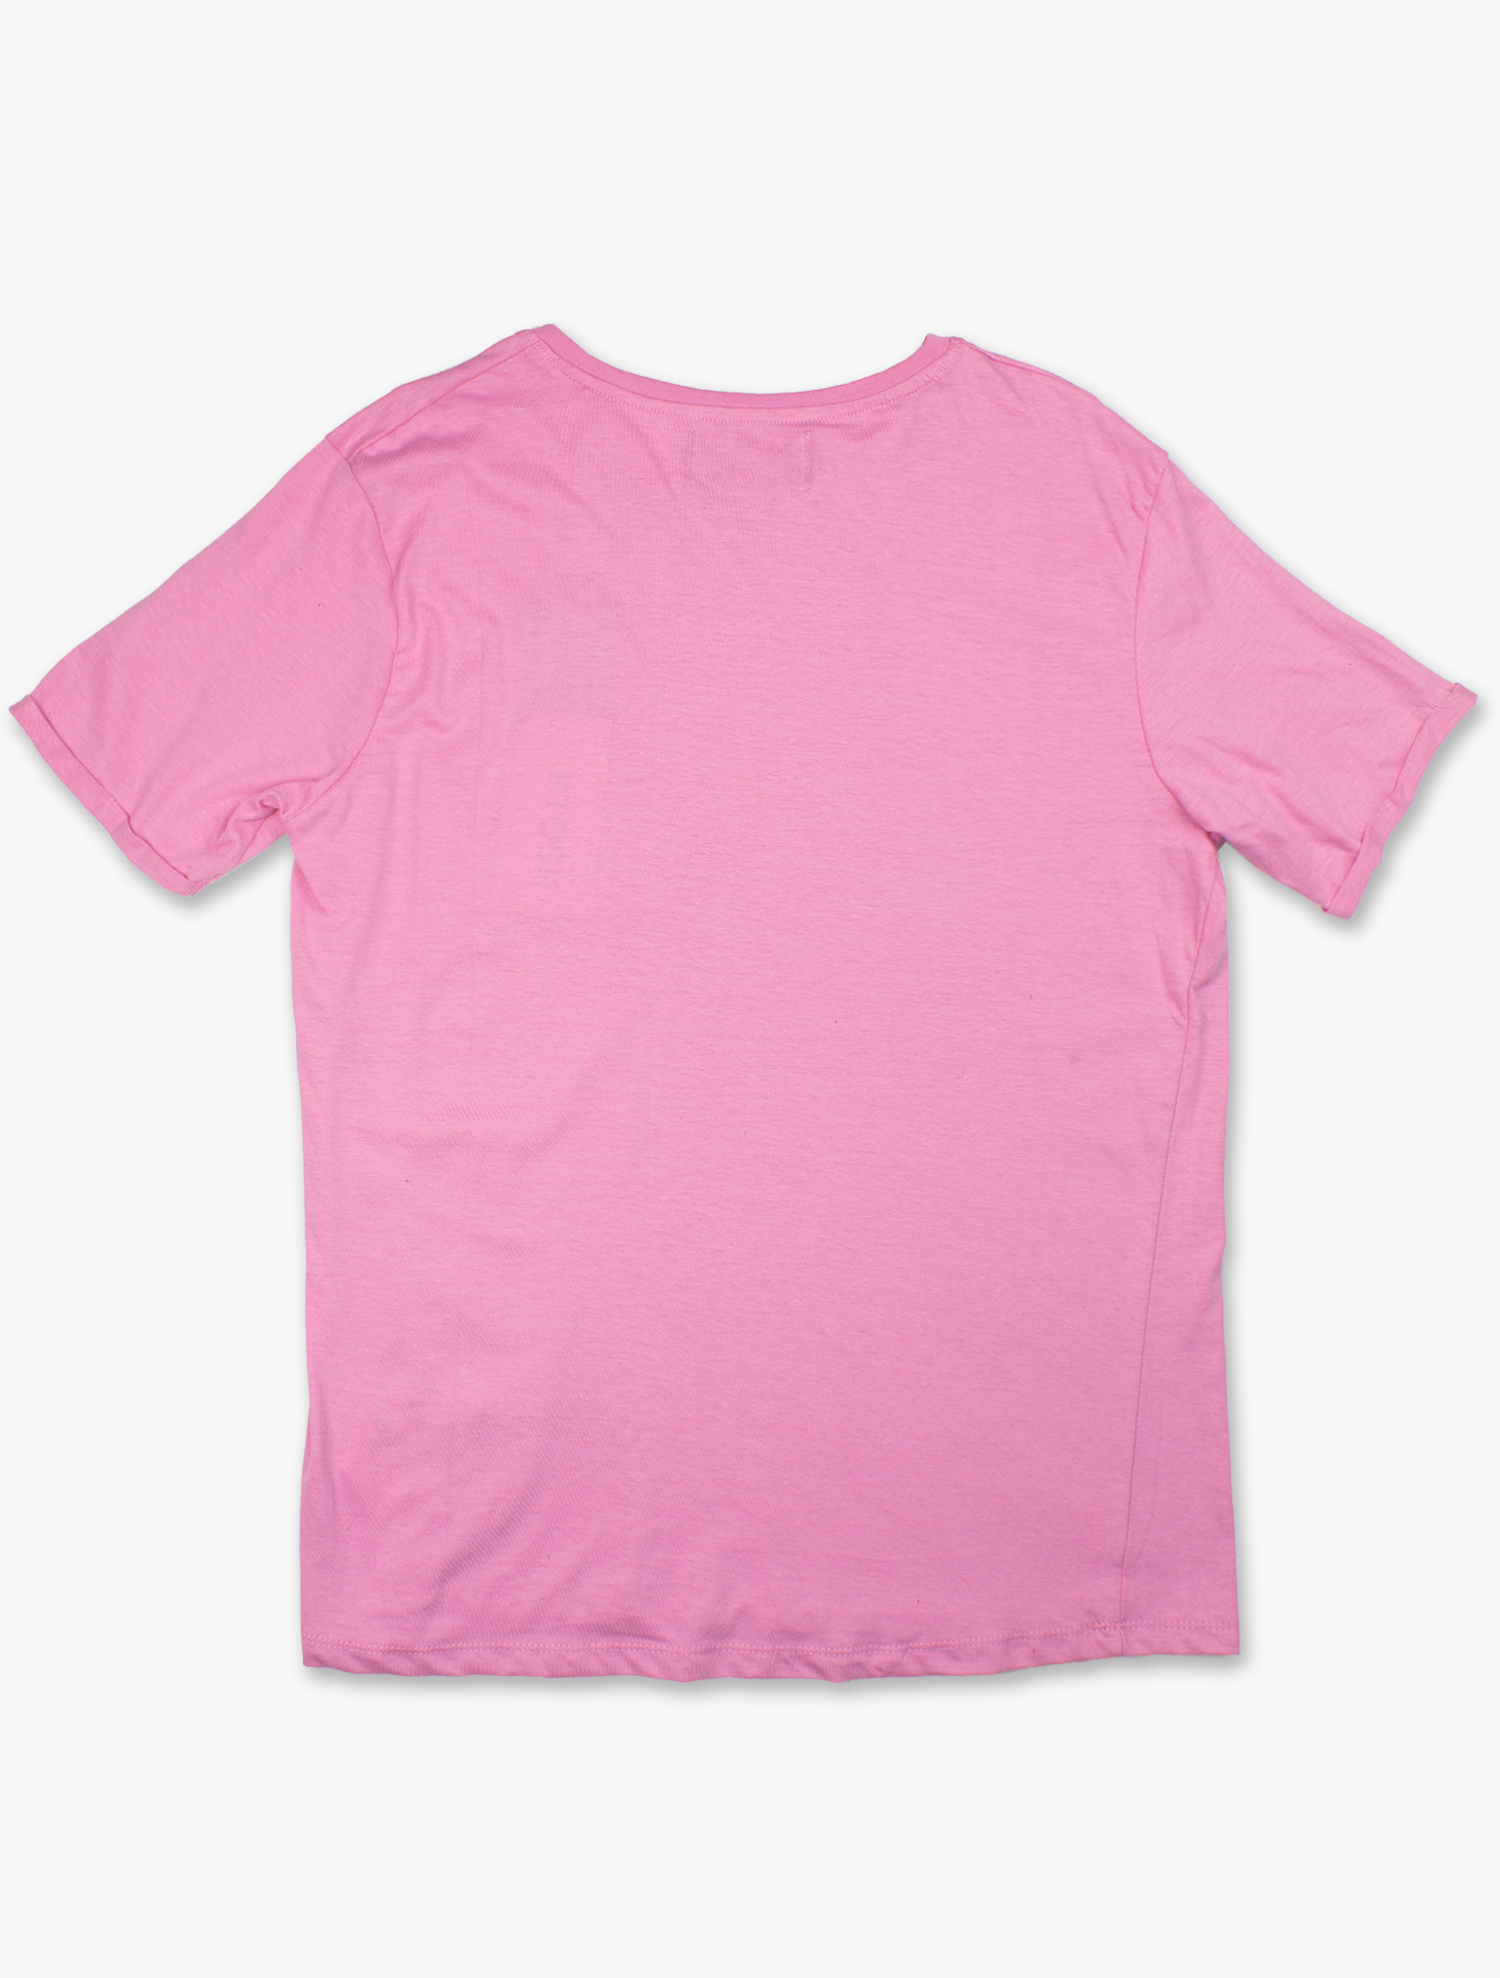 T-shirt básica com bolso no peito